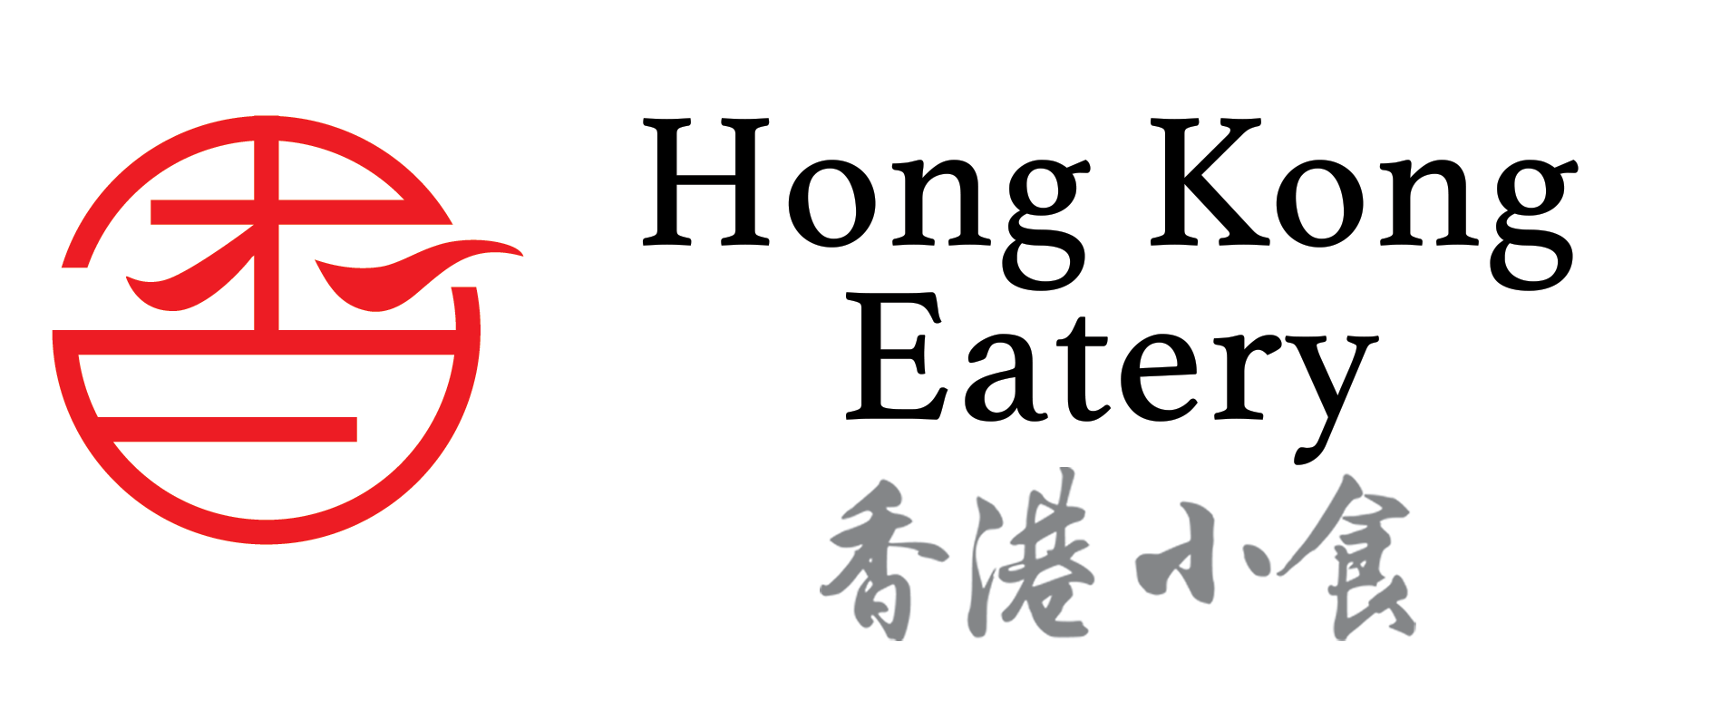 Hong Kong Eatery 